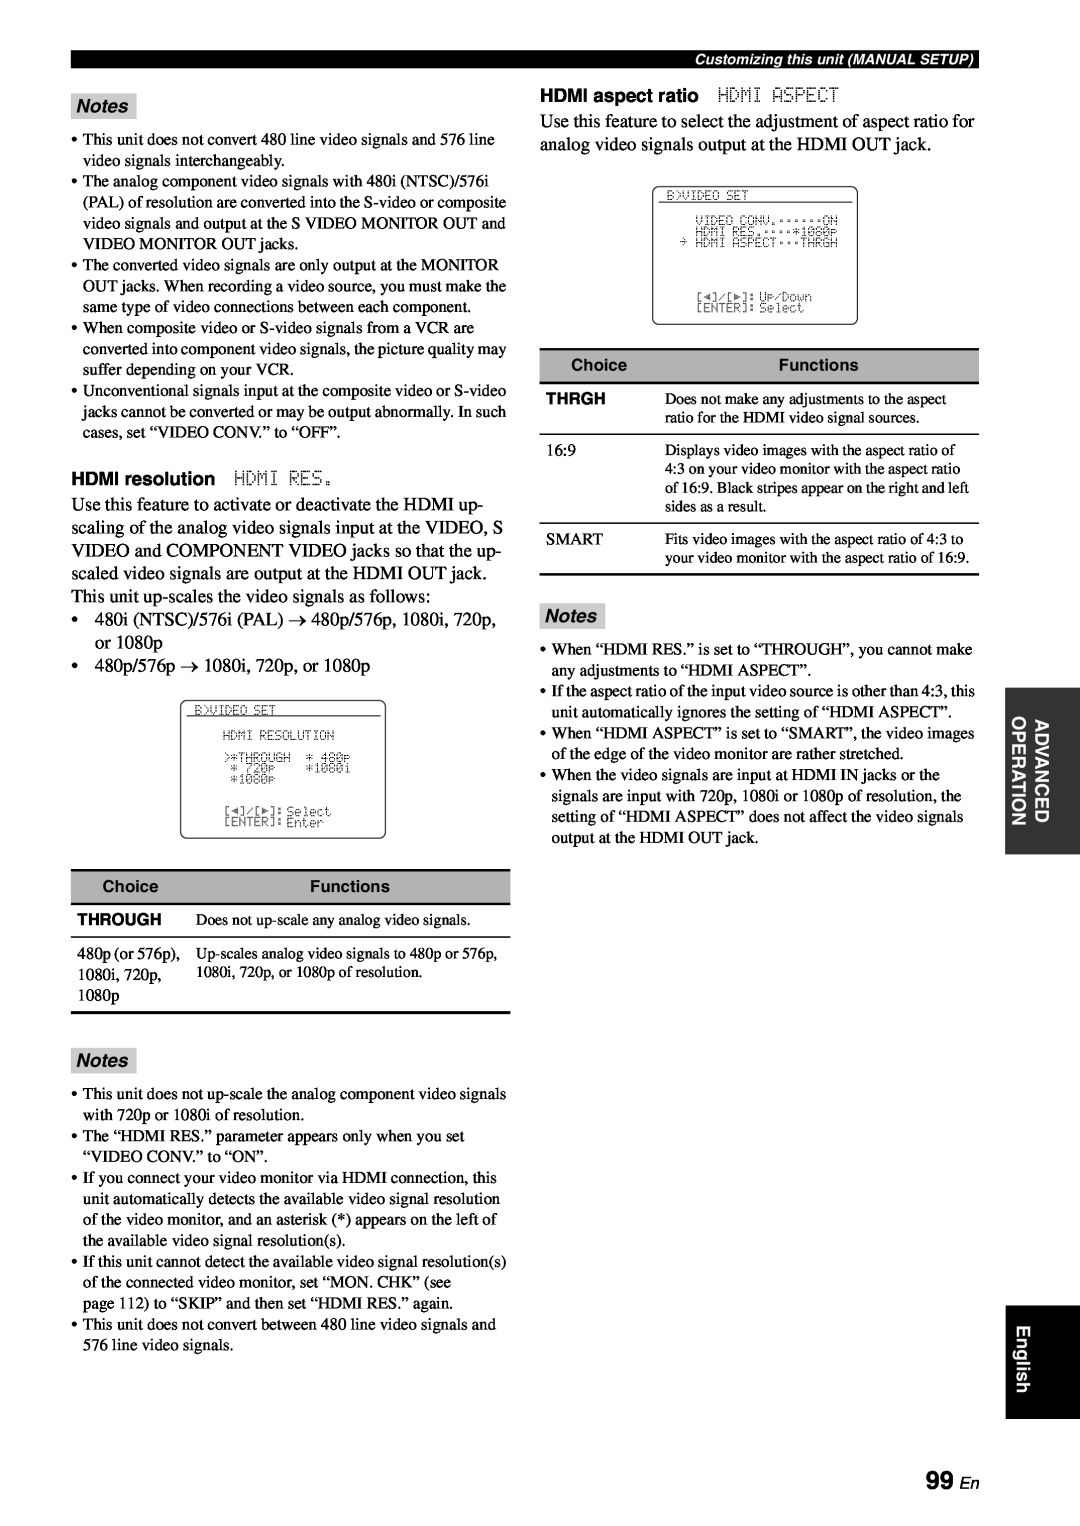 Yamaha RX-V863 owner manual 99 En, Notes, HDMI resolution HDMI RES, HDMI aspect ratio HDMI ASPECT 